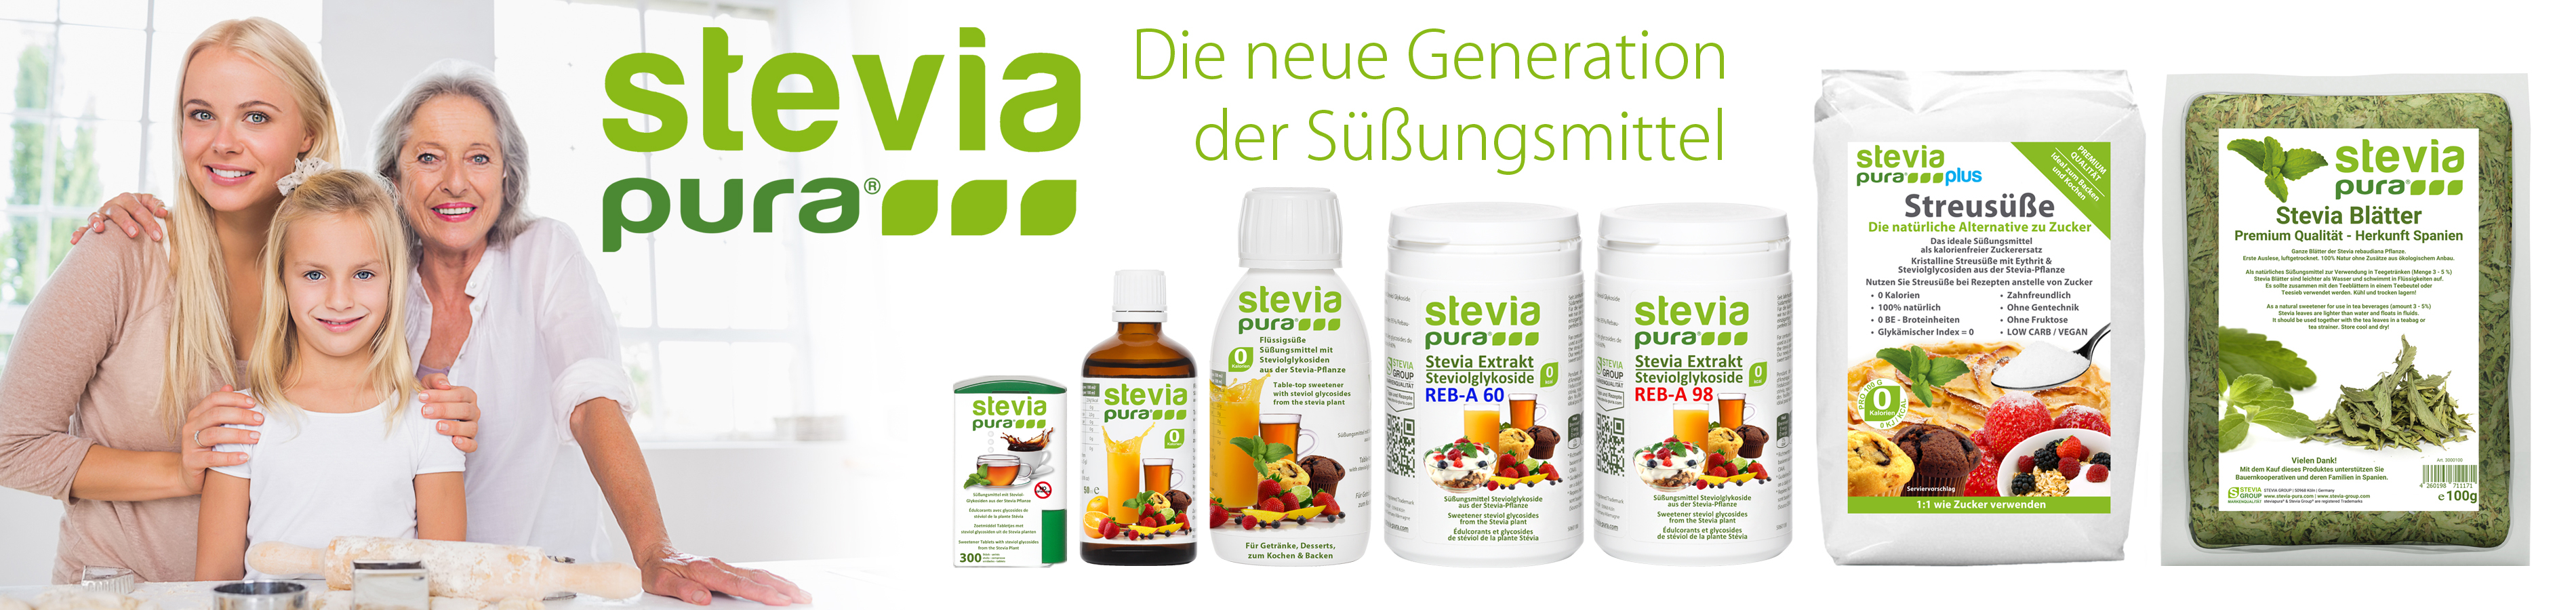 Stevia Group - Die neue Generation der Süßungsmittel:...